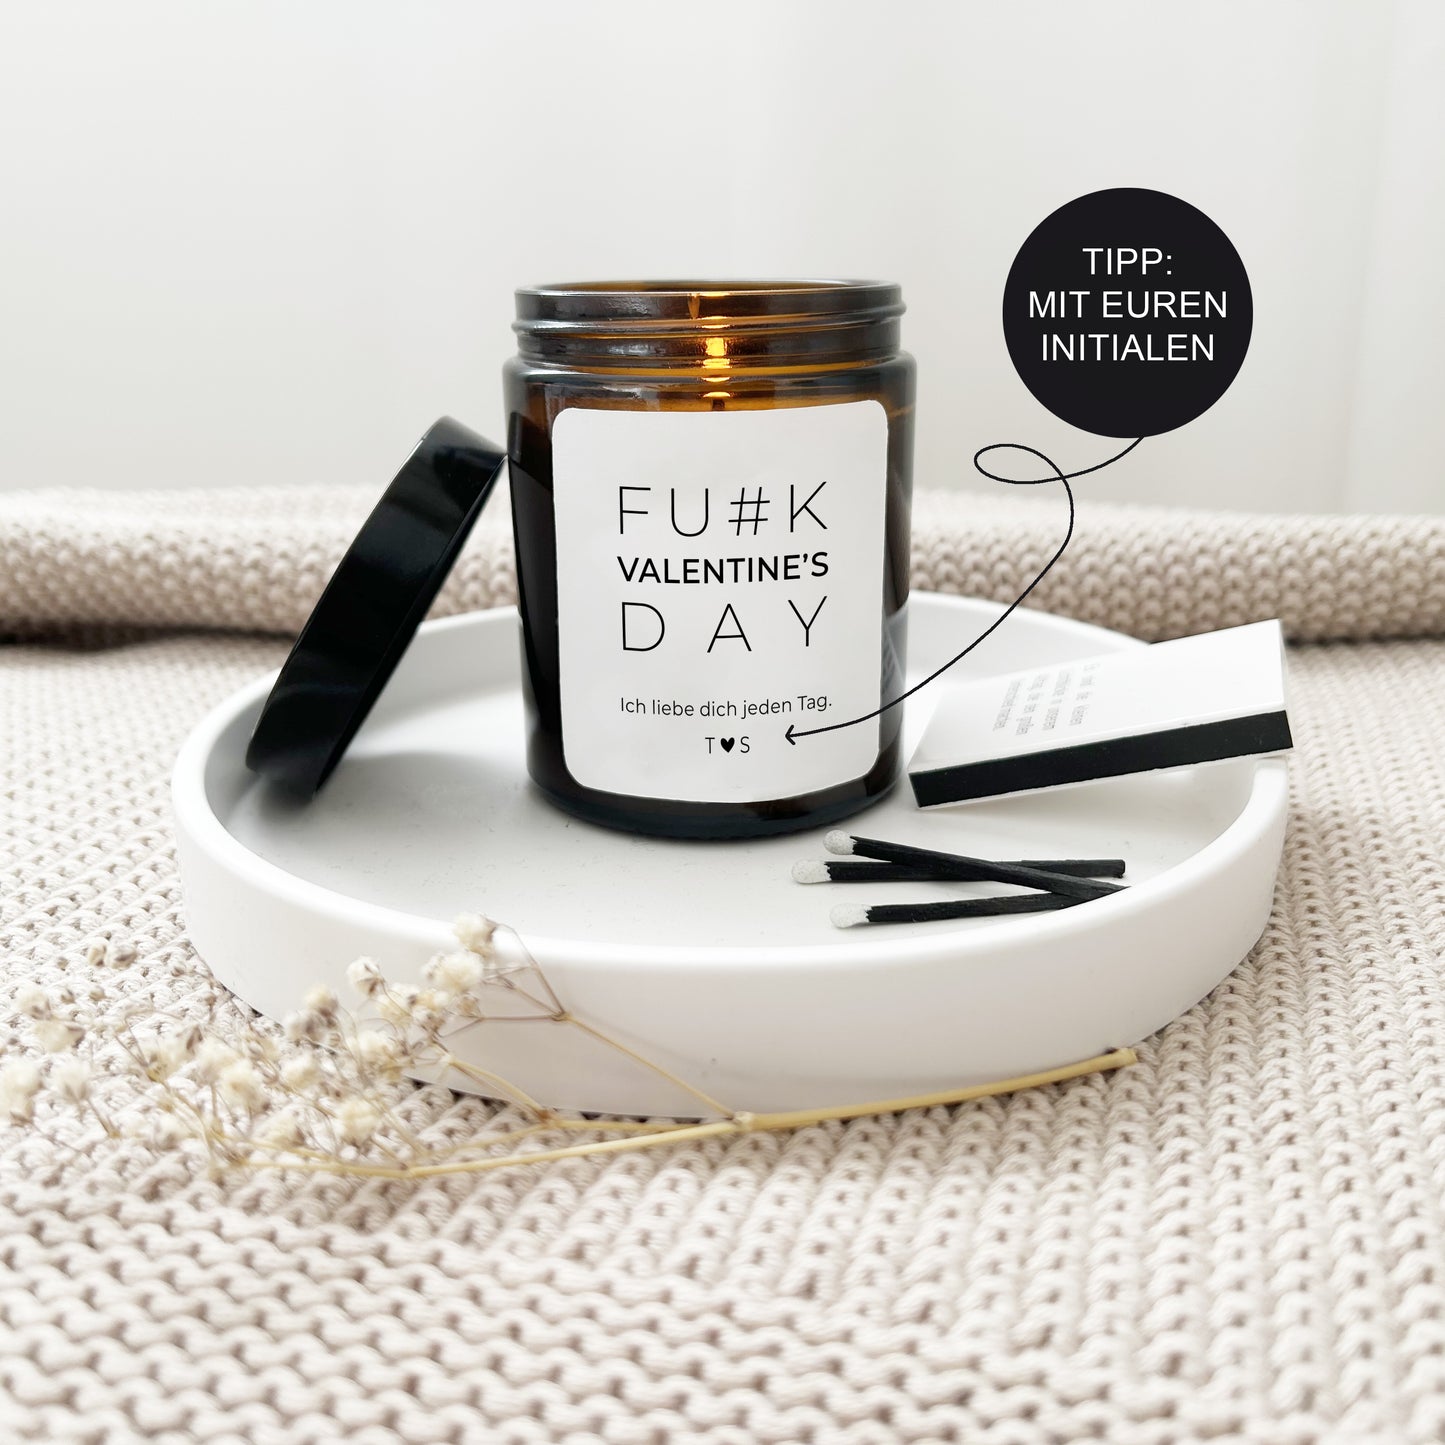 Valentinstag Geschenk personalisierte Kerze mit Spruch "Fuck..." // Herzensmensch